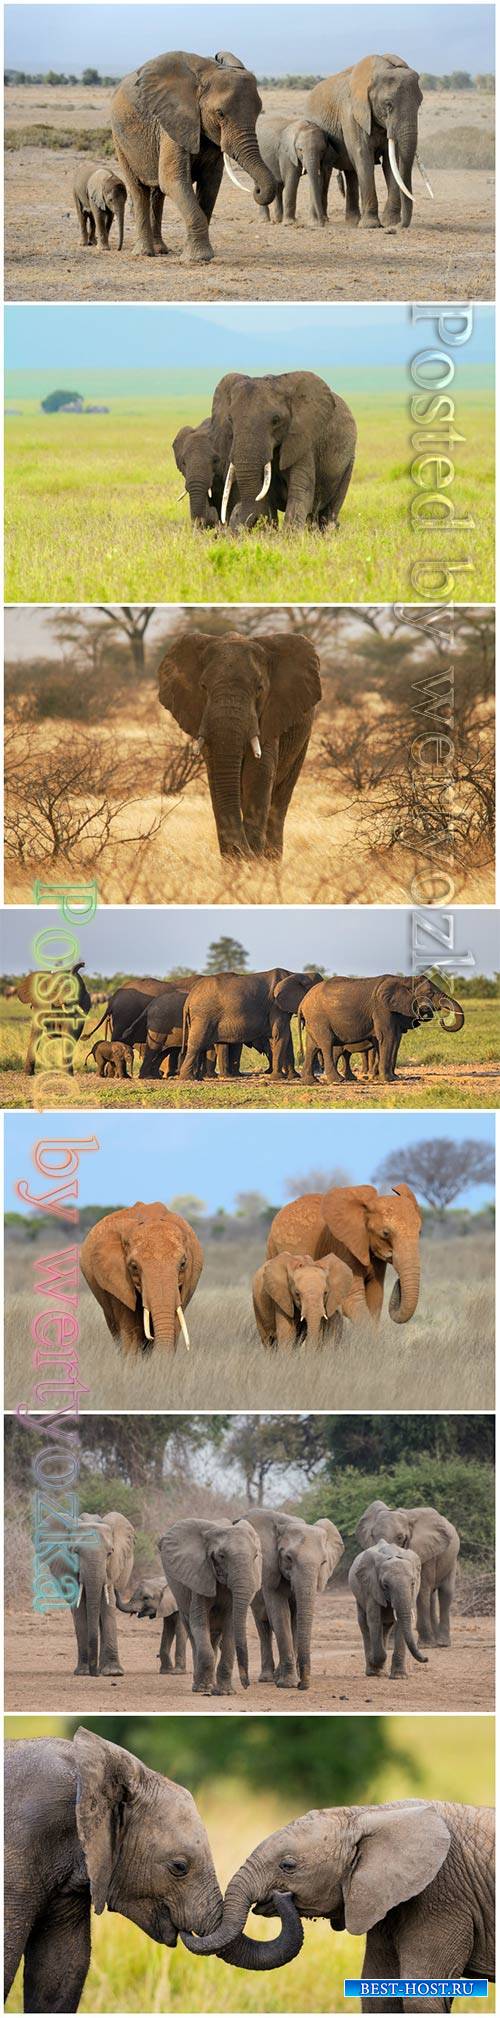 African elephants beautiful stock photo